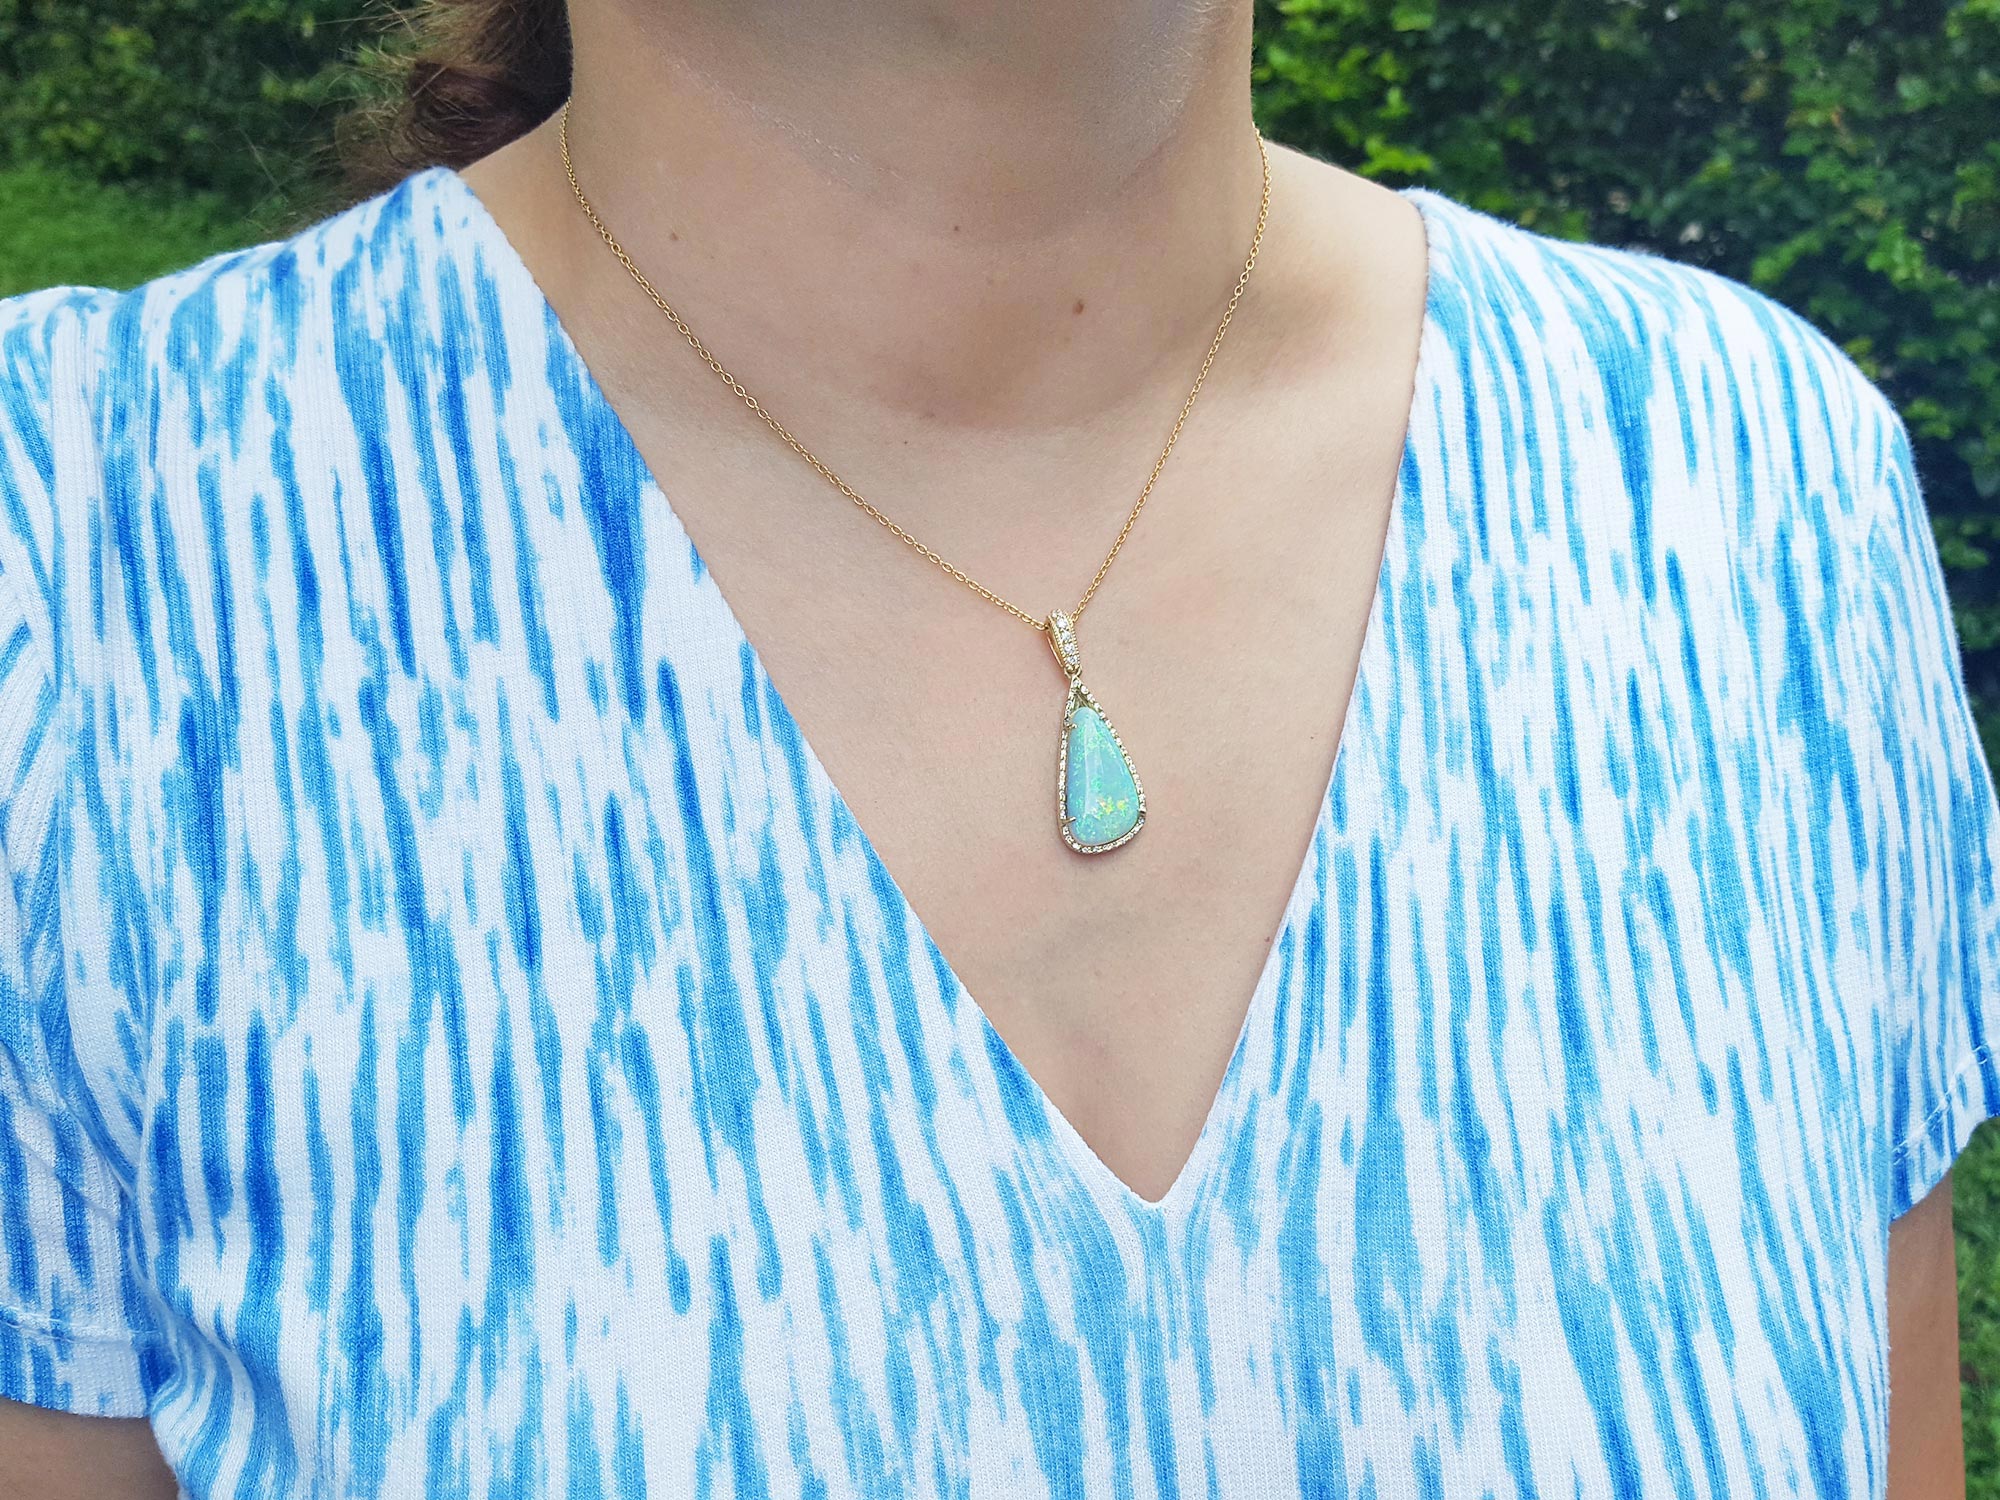 Authentic Australian opal necklace